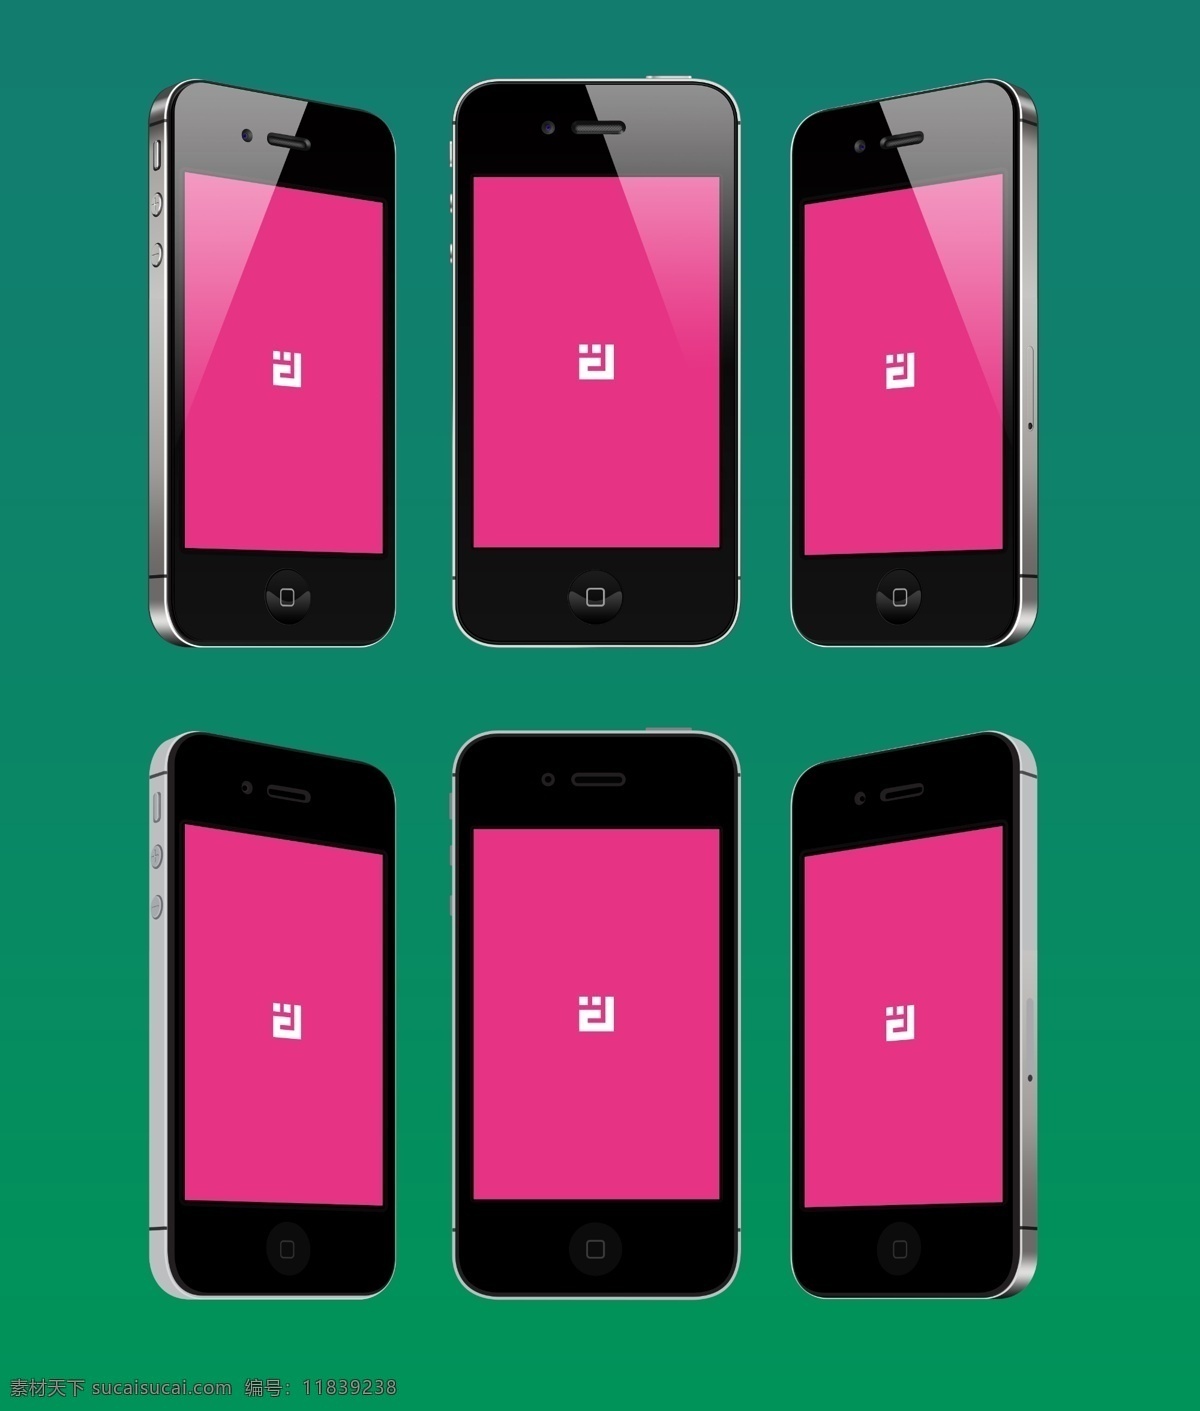 场景 中 黑色 iphone4s 手机 样机 模板 高清手机壁纸 苹果 iphone 场景样机 运动耳机 mockup 模版 展示 ui页面展示 appshowcase 样机模板 智能对象涂层 听歌状态